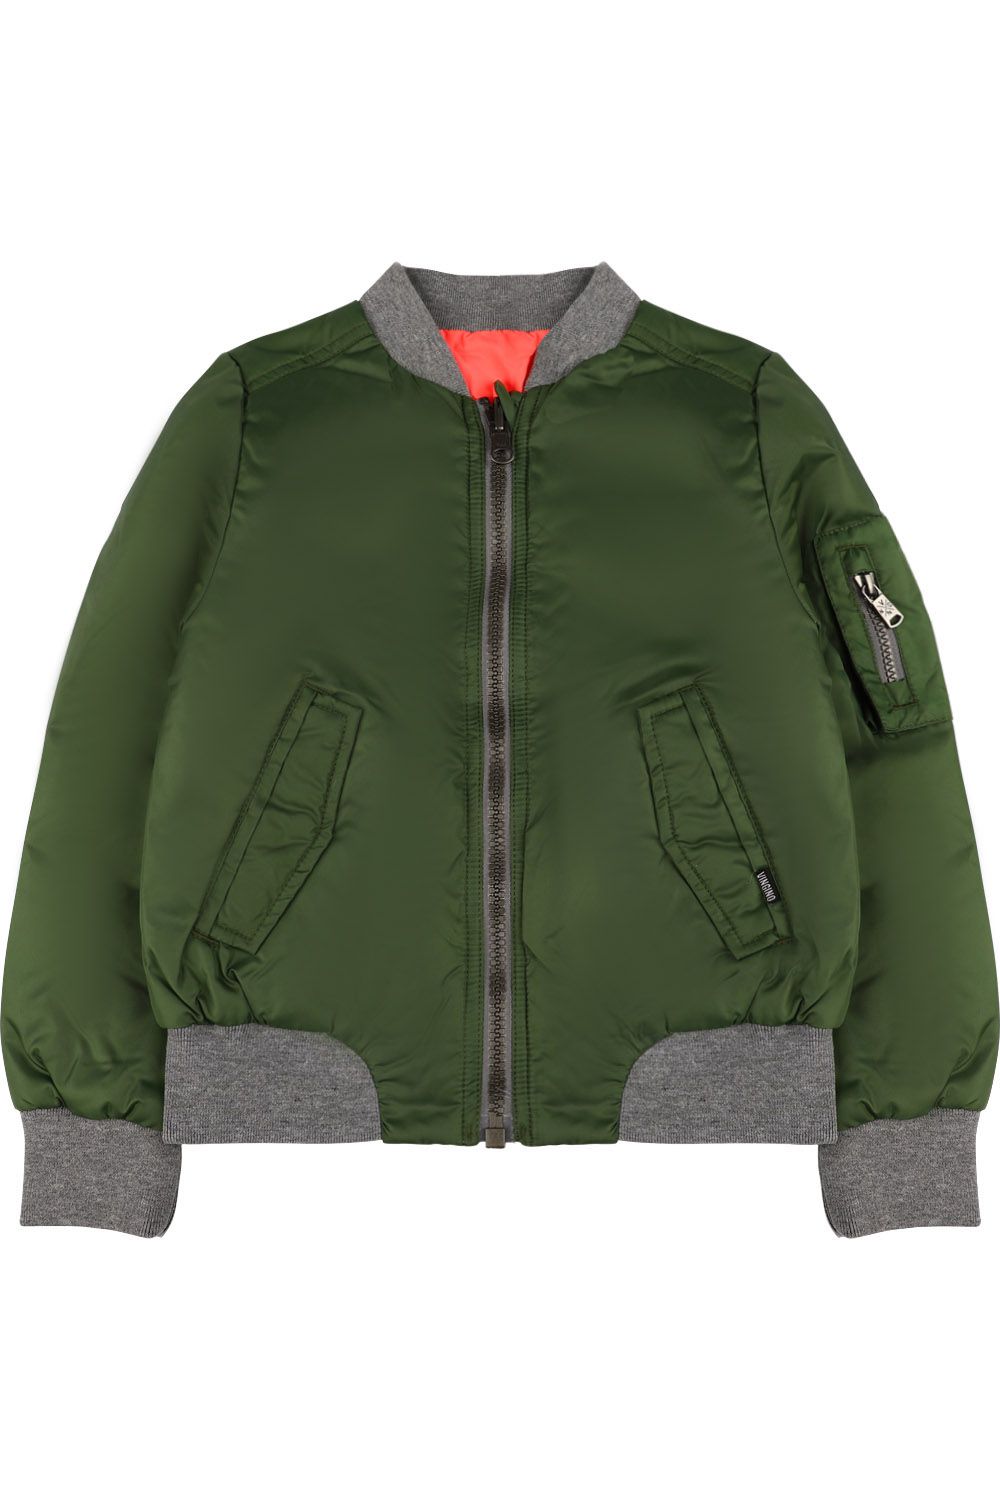 Куртка Vingino, размер 128, цвет зеленый - фото 1